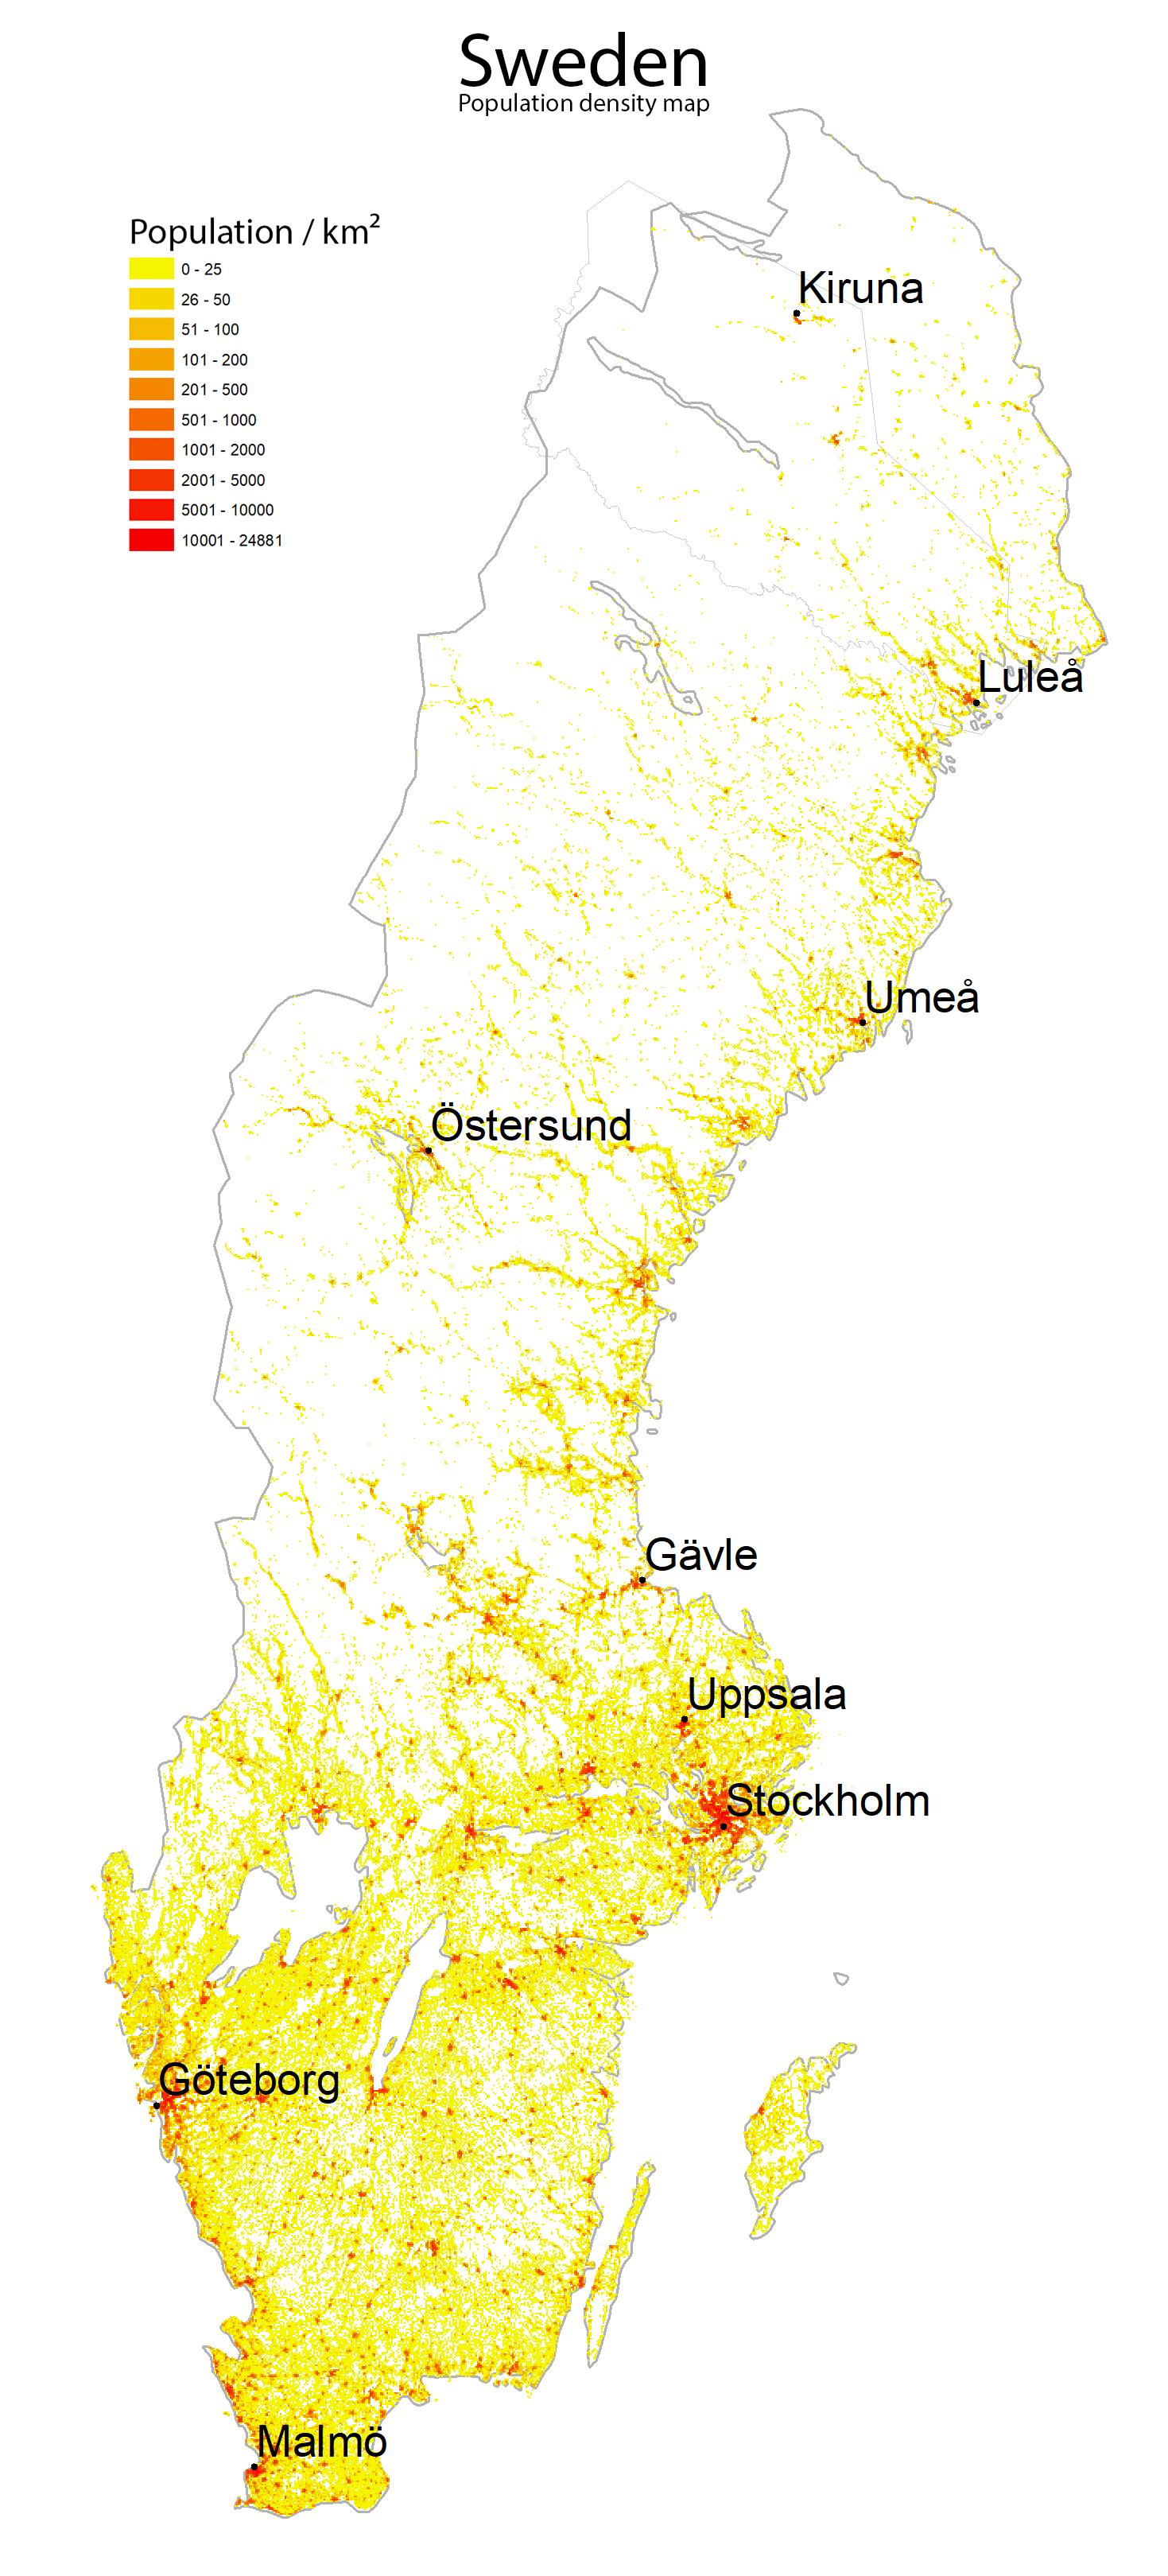 Sweden population density map Population density map of Sweden